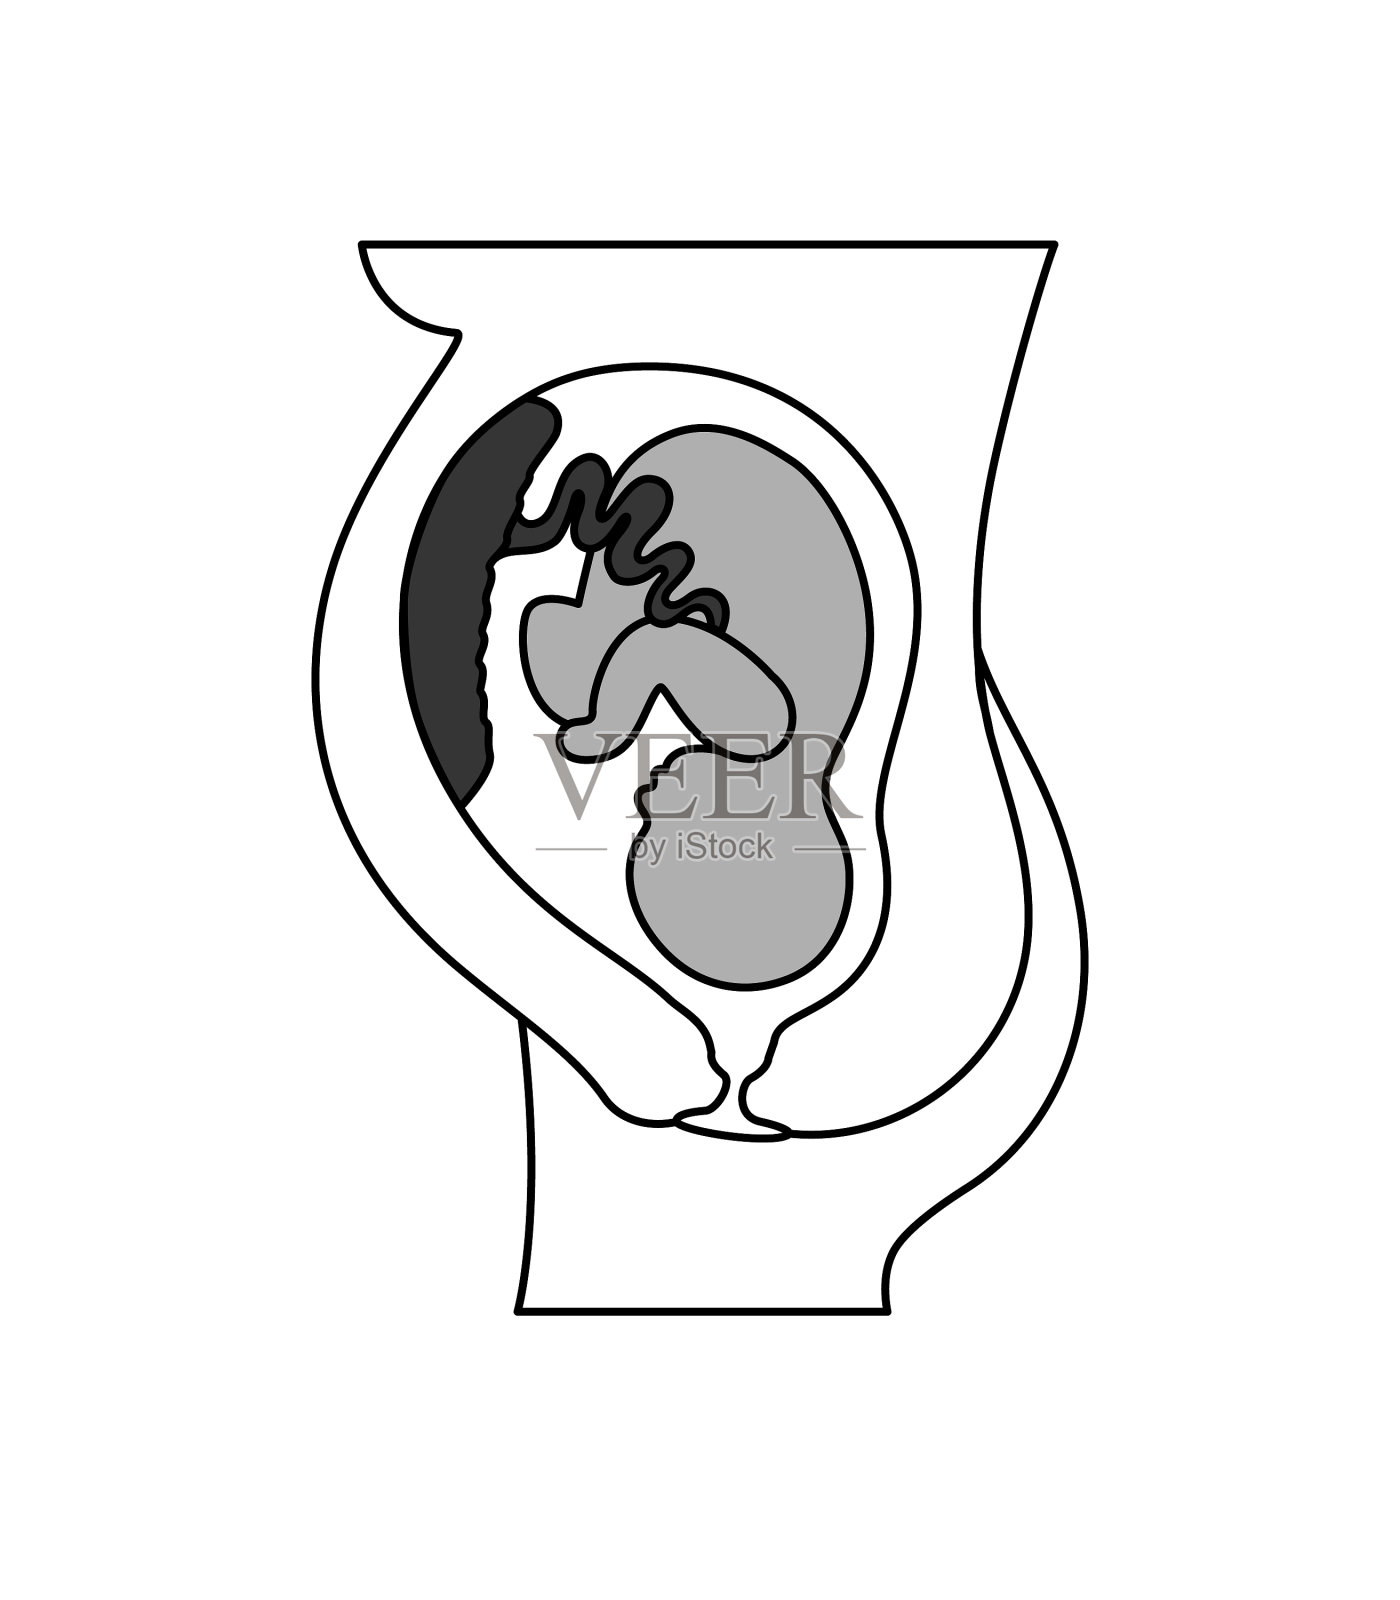 16周孕妇B超图，如图 请帮助分析一下胎儿发育情况 - 百度宝宝知道